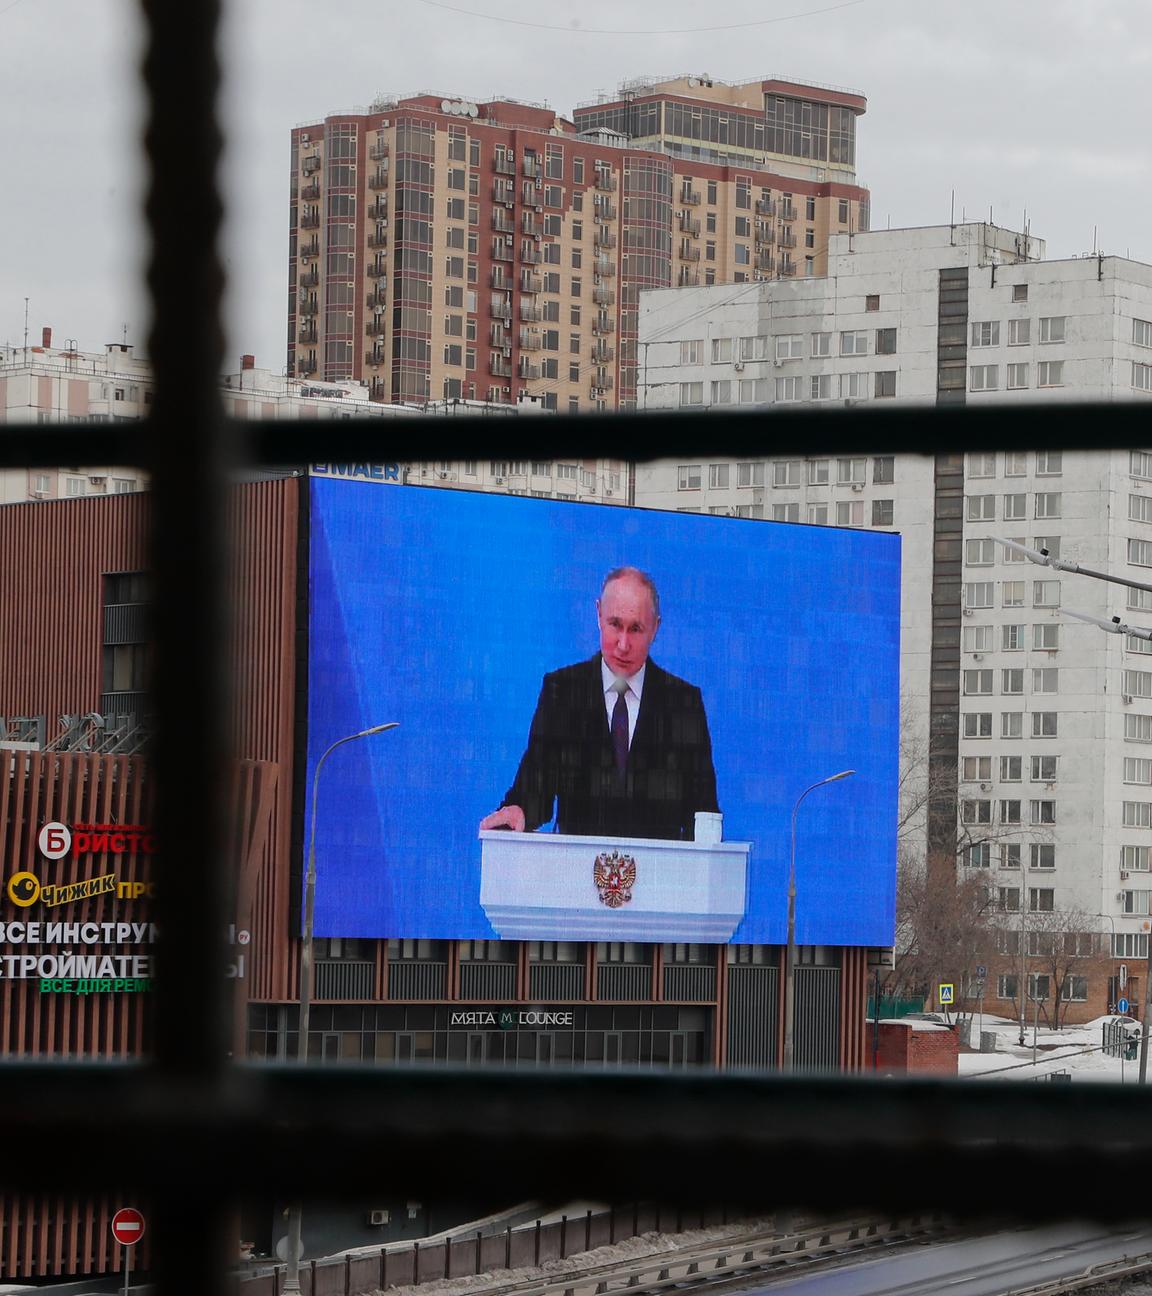 Ein Bildschrim an einem Gebäude, auf dem Bildschirm ist Waldimir Putin zu sehen.